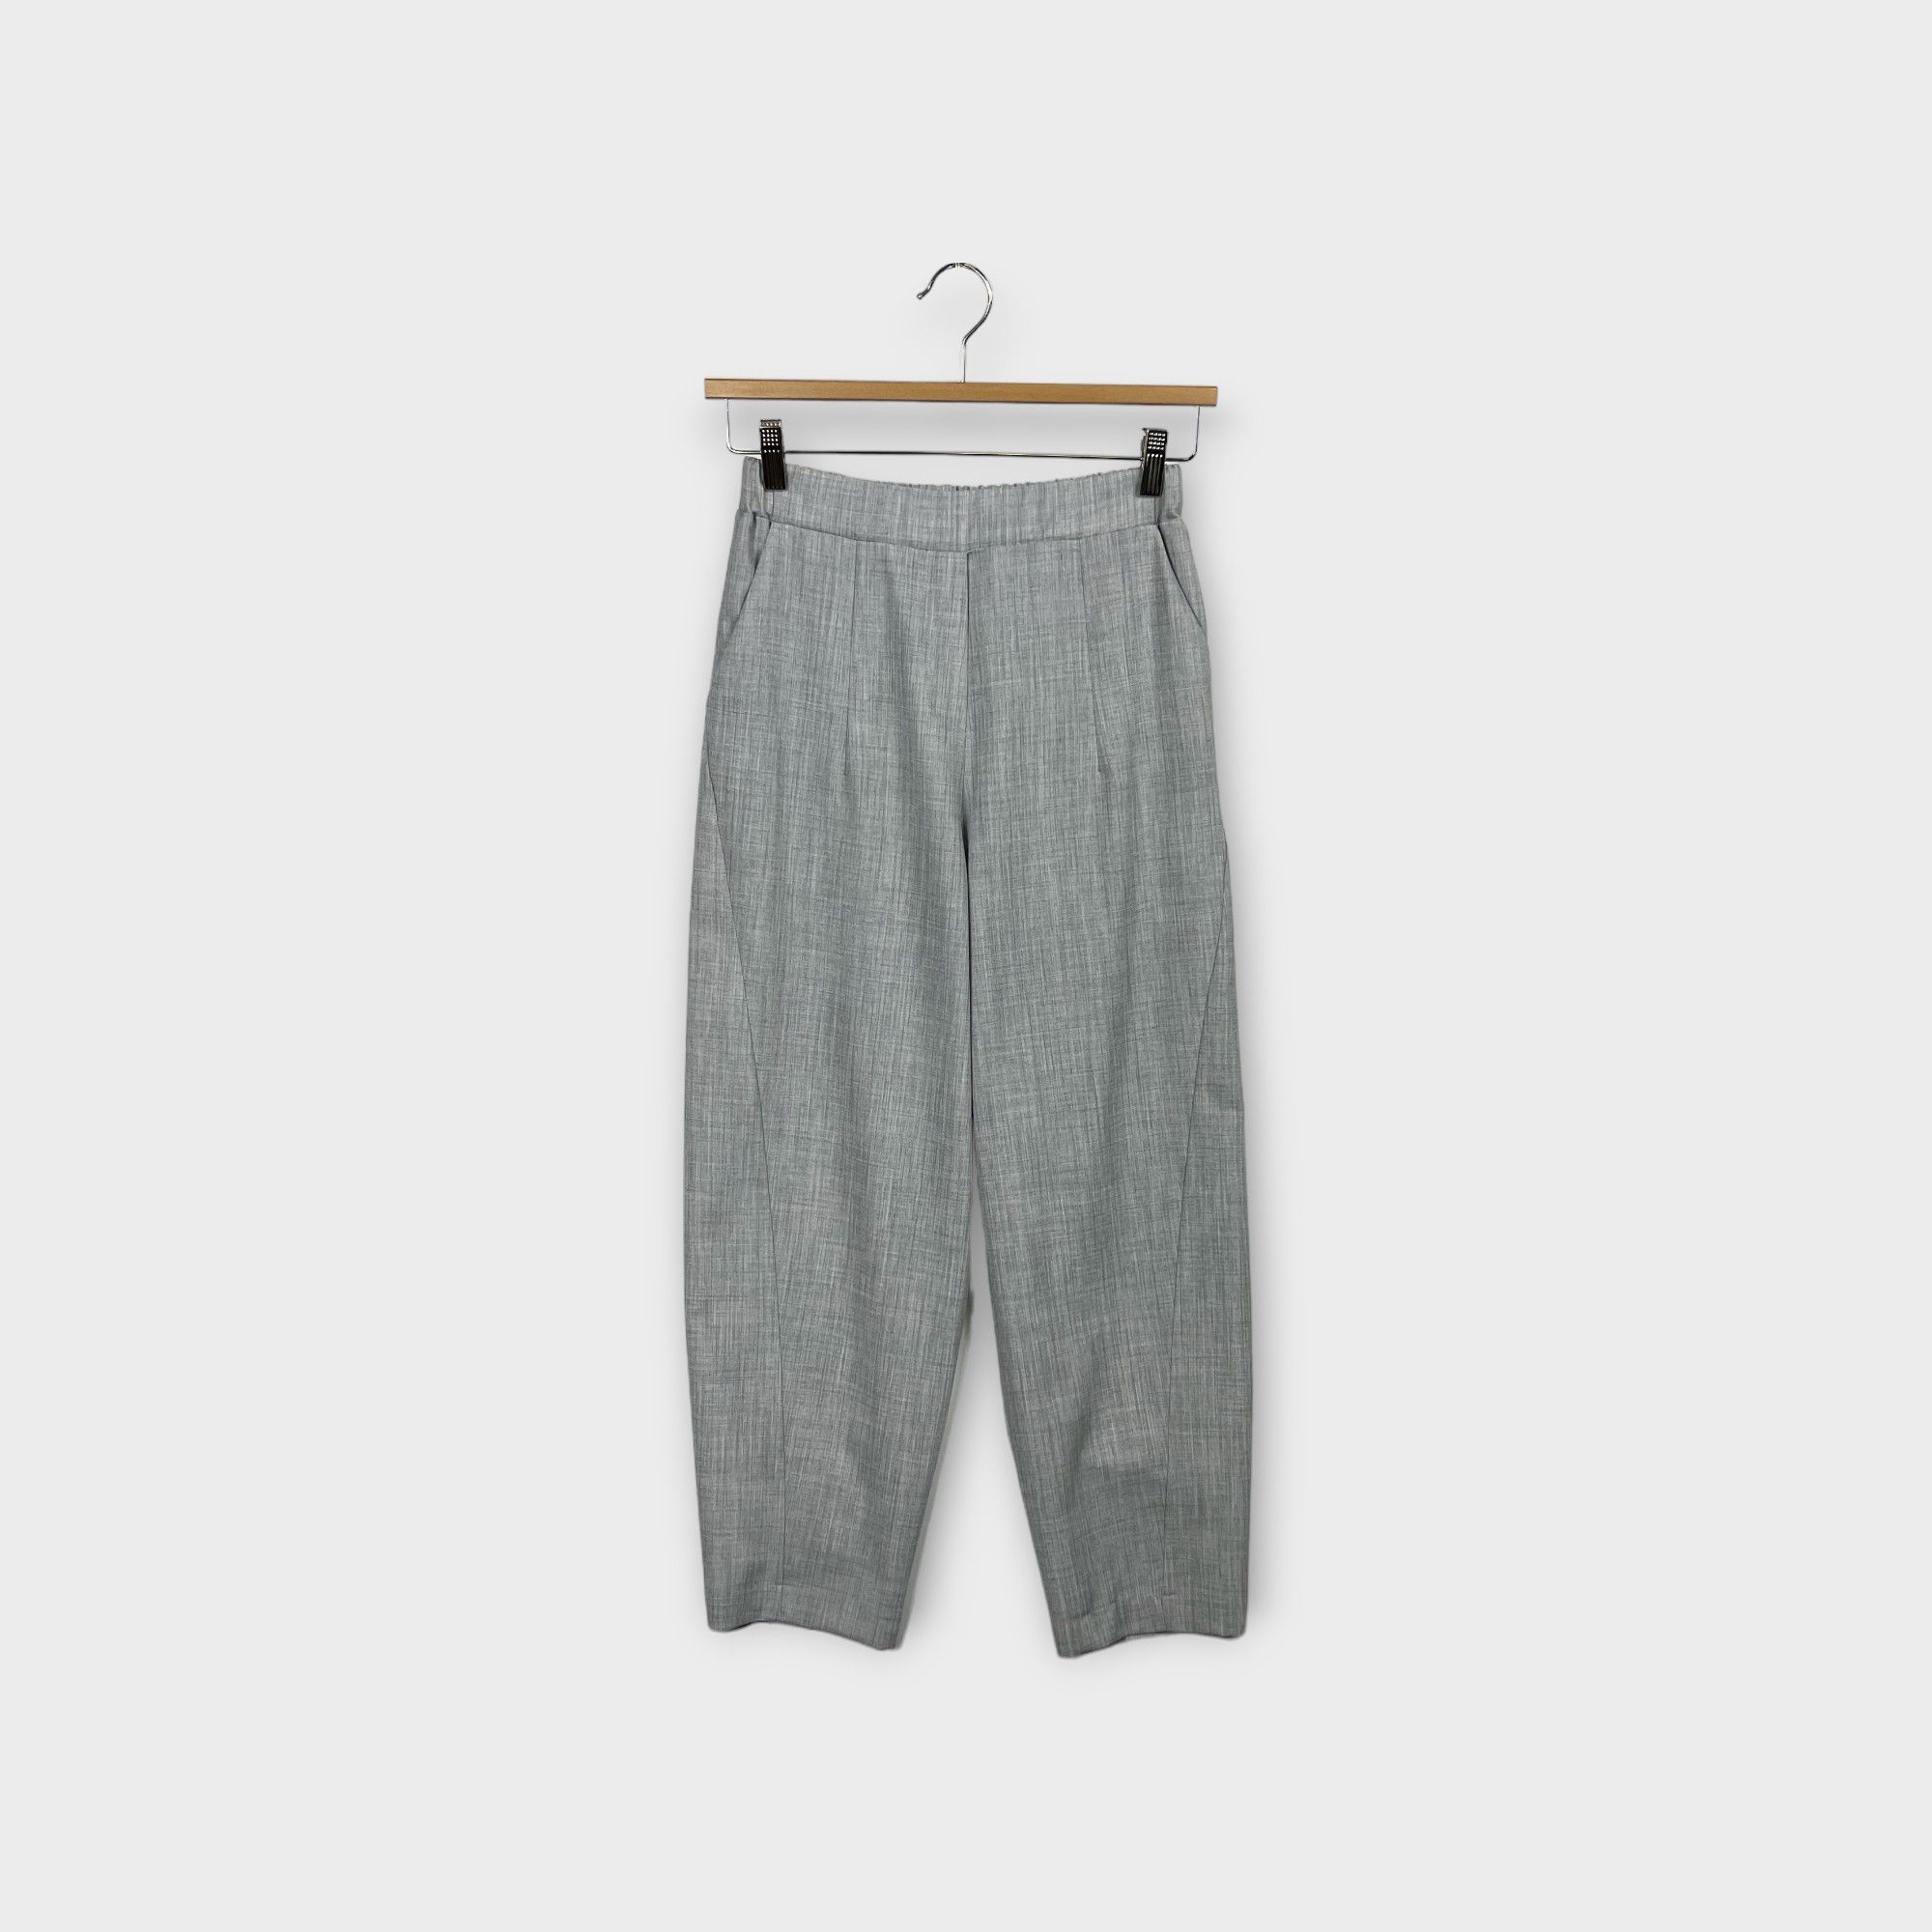 images/virtuemart/product/HELLEH Pantaloni donna modello boyfriends di costruzione sartoriale comodo  elastico in vita colore grigio 1.jpg